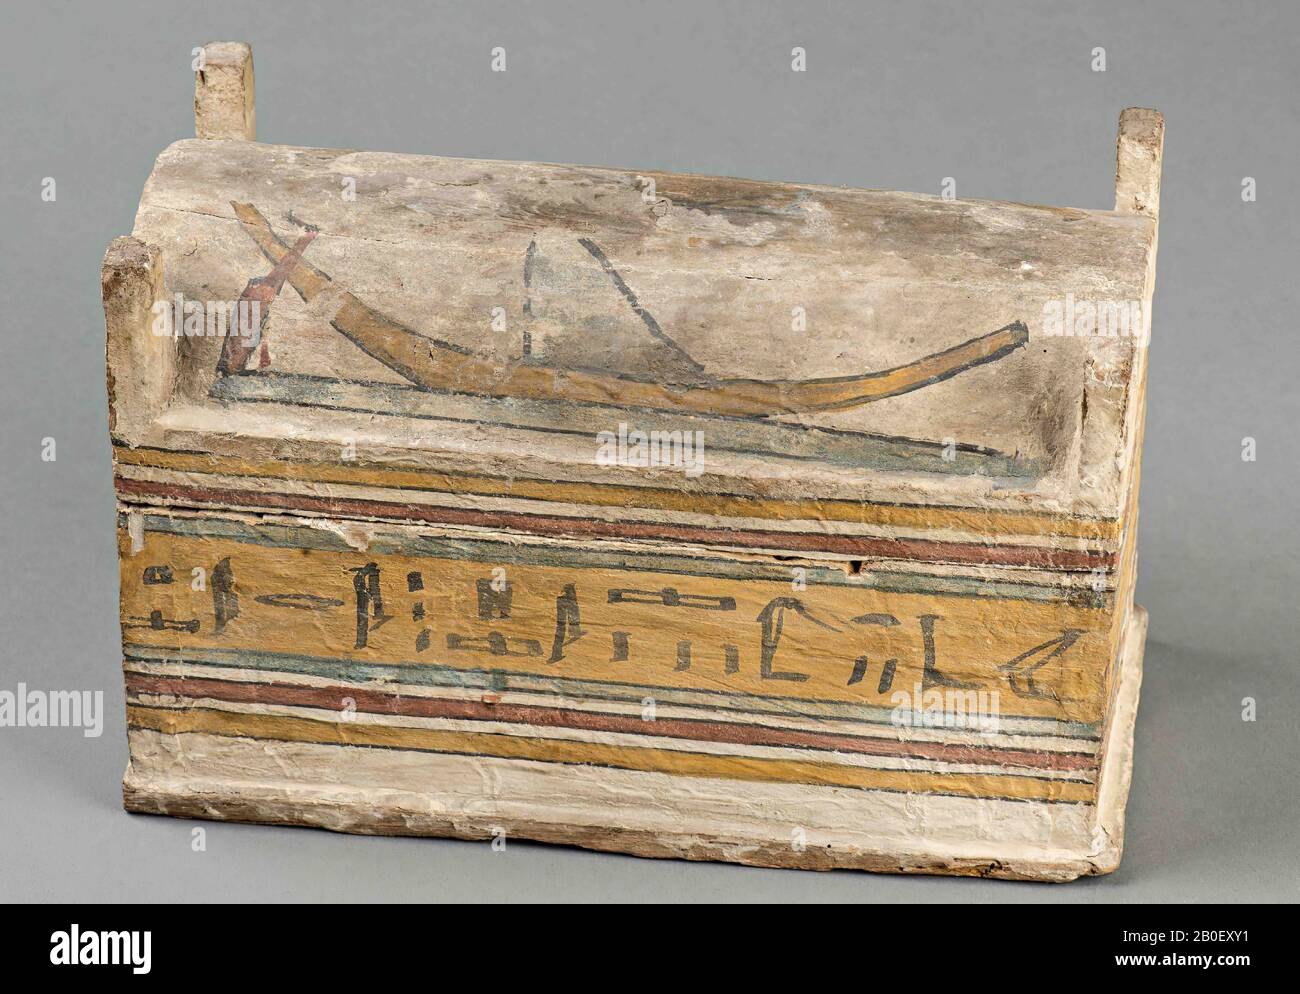 Setaiwai, Oesjebtikistje, Holz, 20 x 13 x 31 cm, Spätzeit, Ägypten Stockfoto